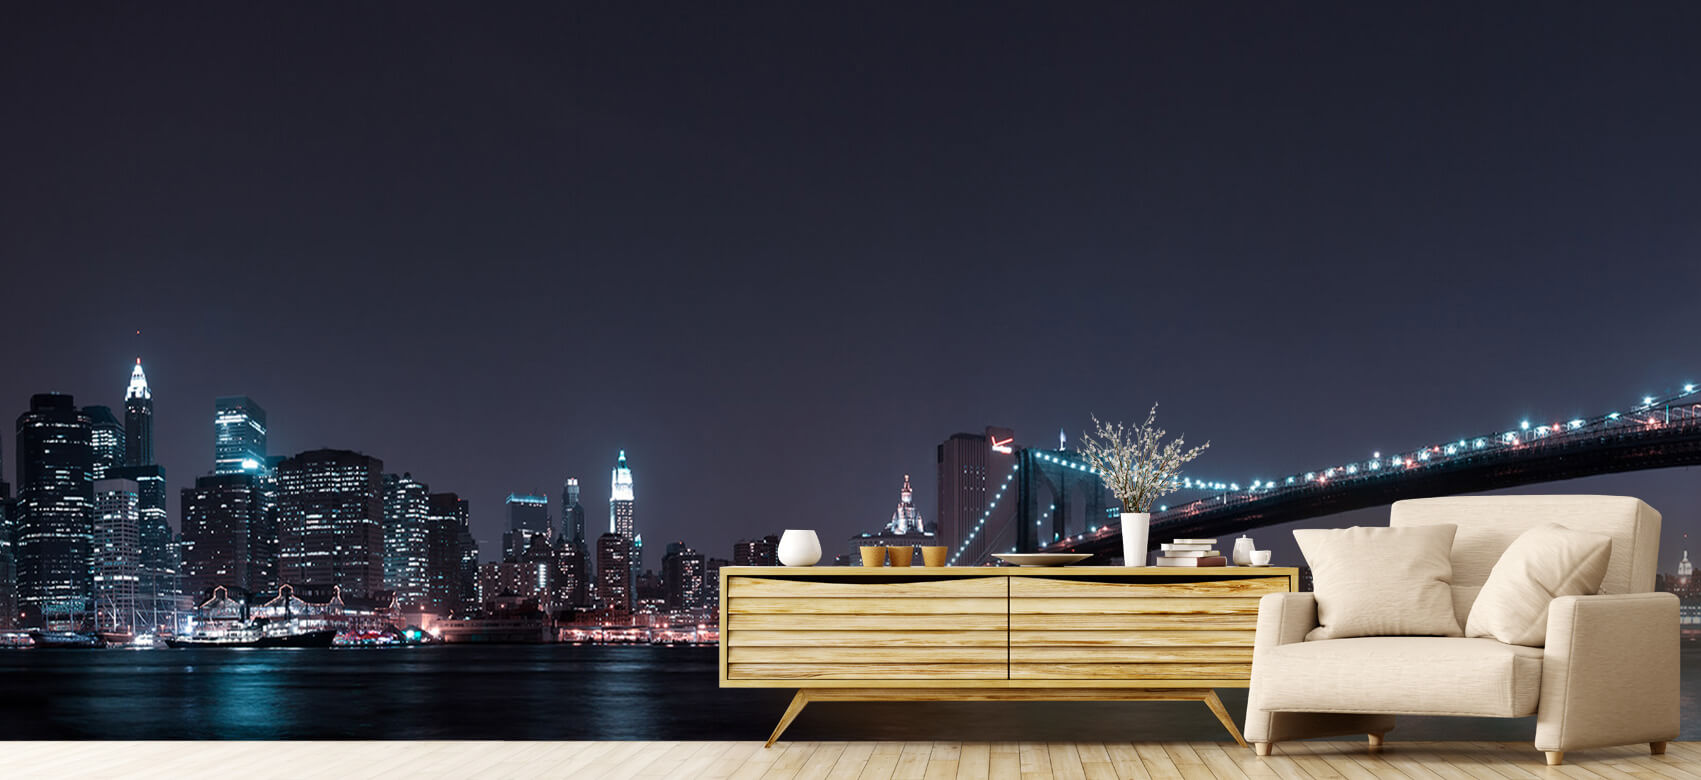 Nacht Papel pintado con El horizonte de Manhattan y el puente de Brooklyn - Habitación de adolescentes 6